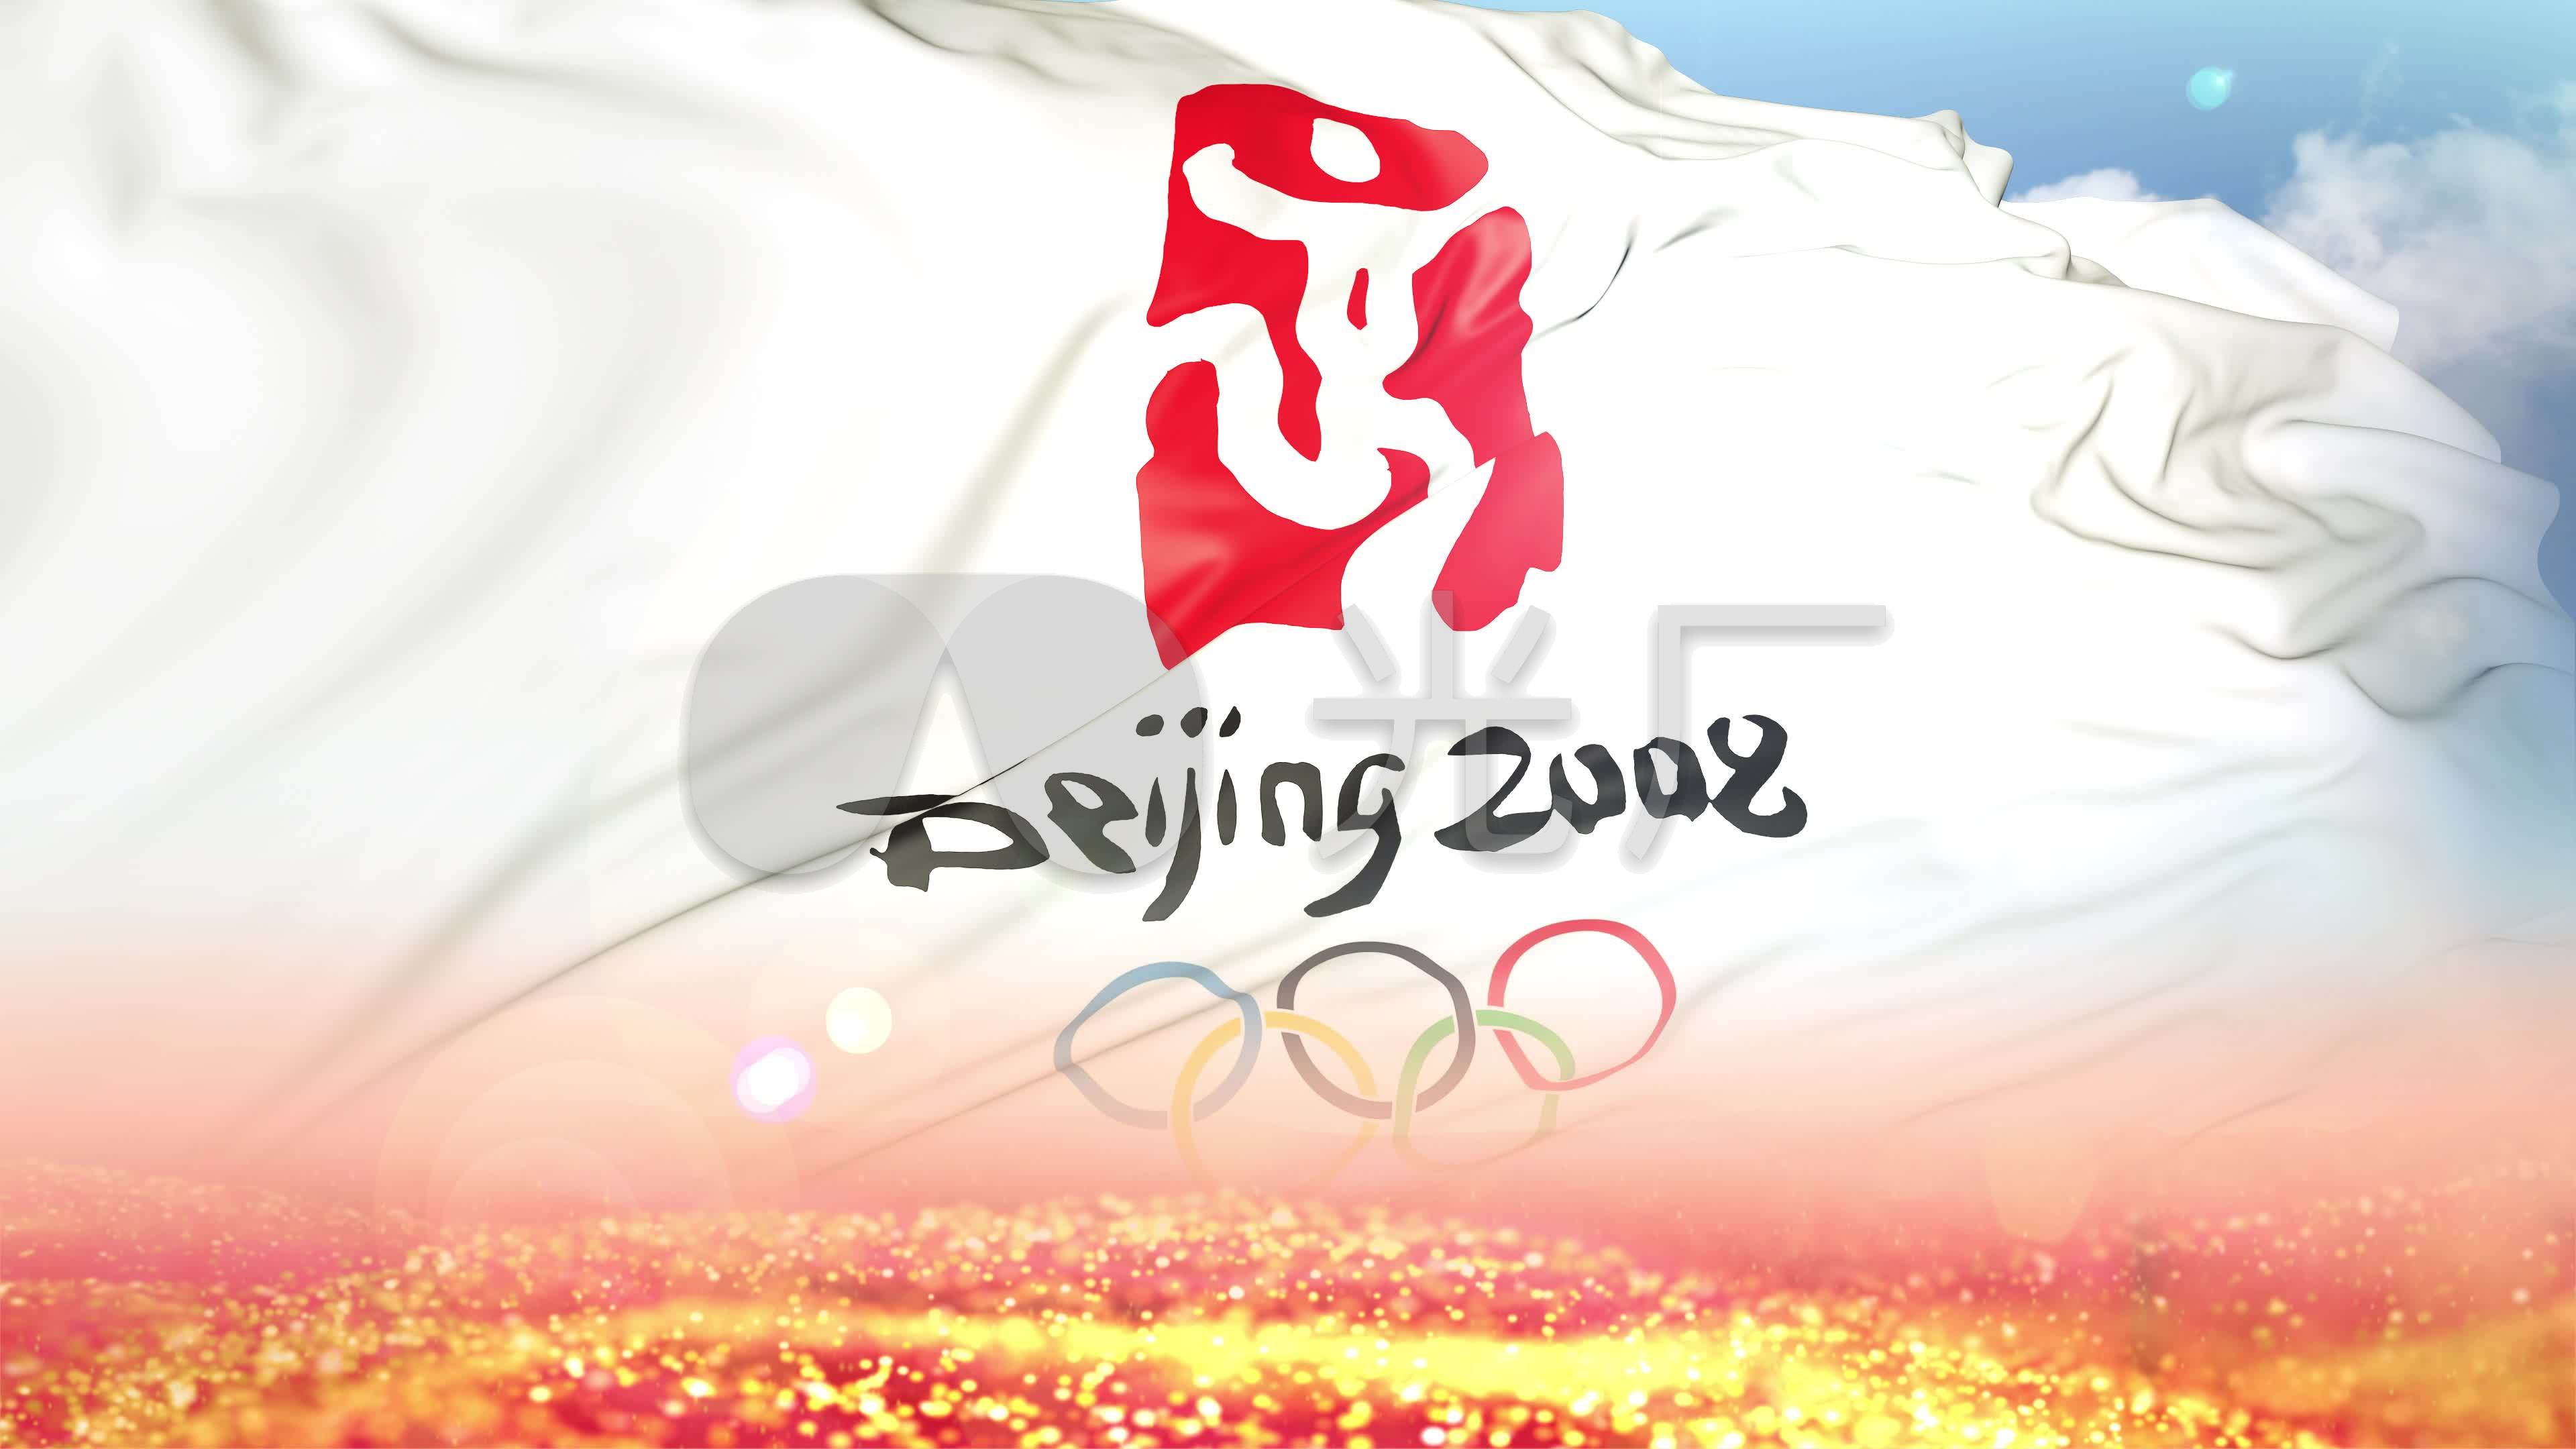 2008北京奥运会旗子背景_3840x2160_高清视频素材下载